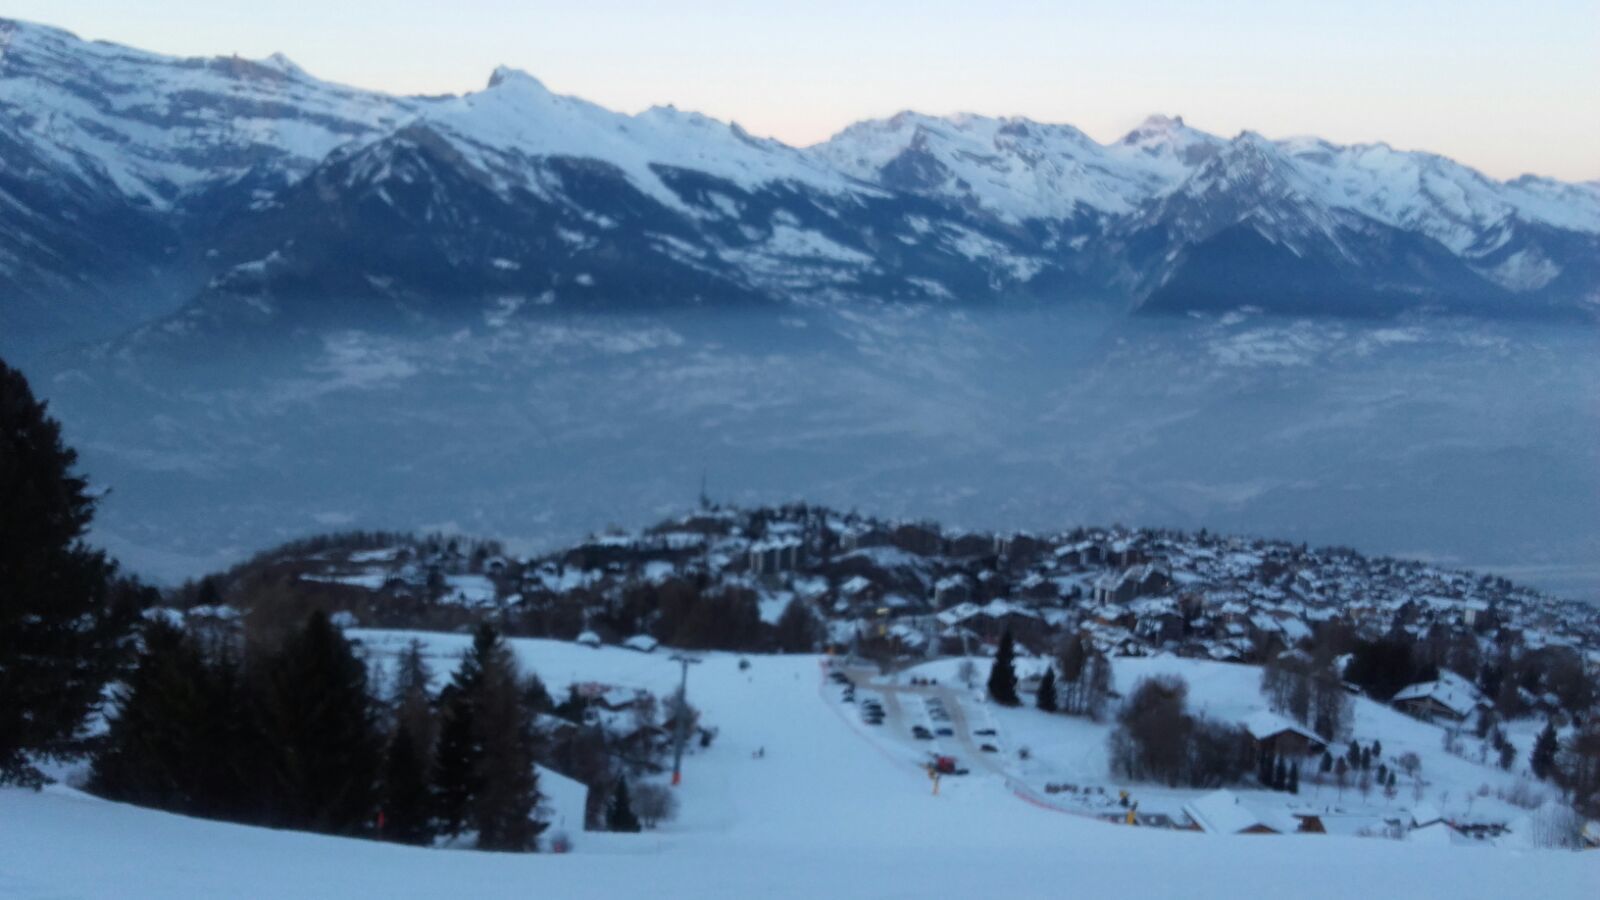 8 dias por los Alpes suizos (4 Vallées, Nendaz-Verbier)